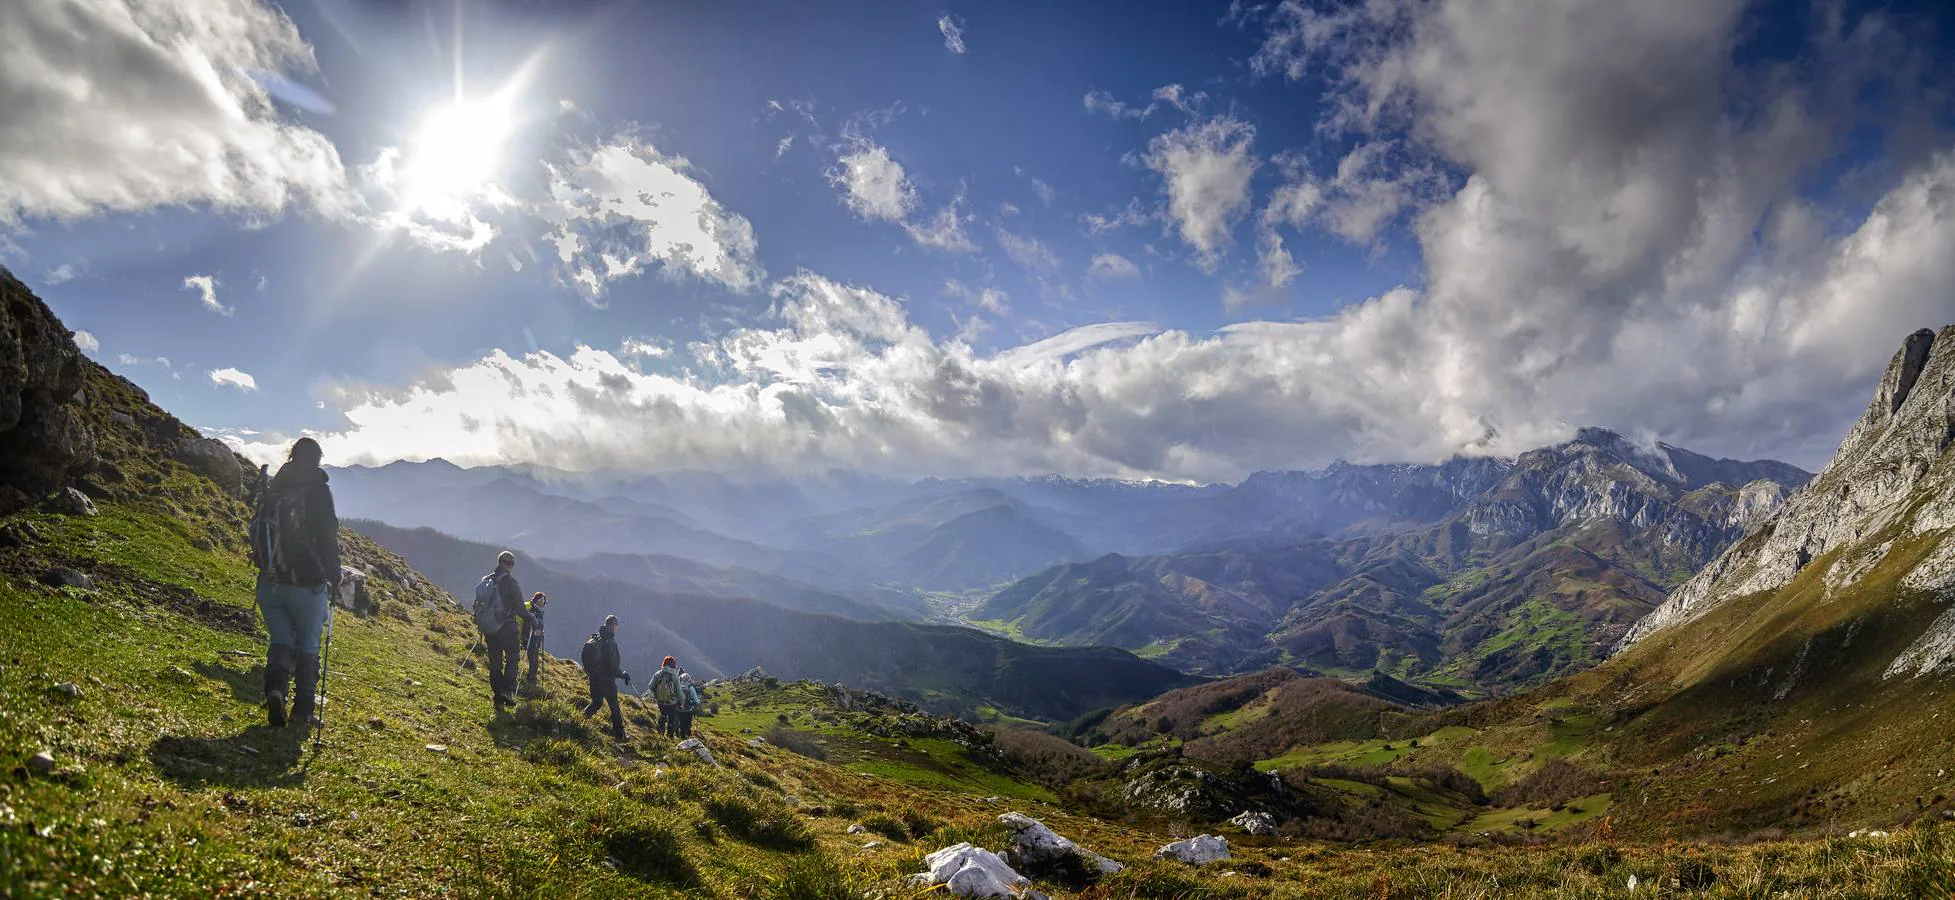 Cantabria y sus 800 actividades al aire libre. ¿Te apuntas?